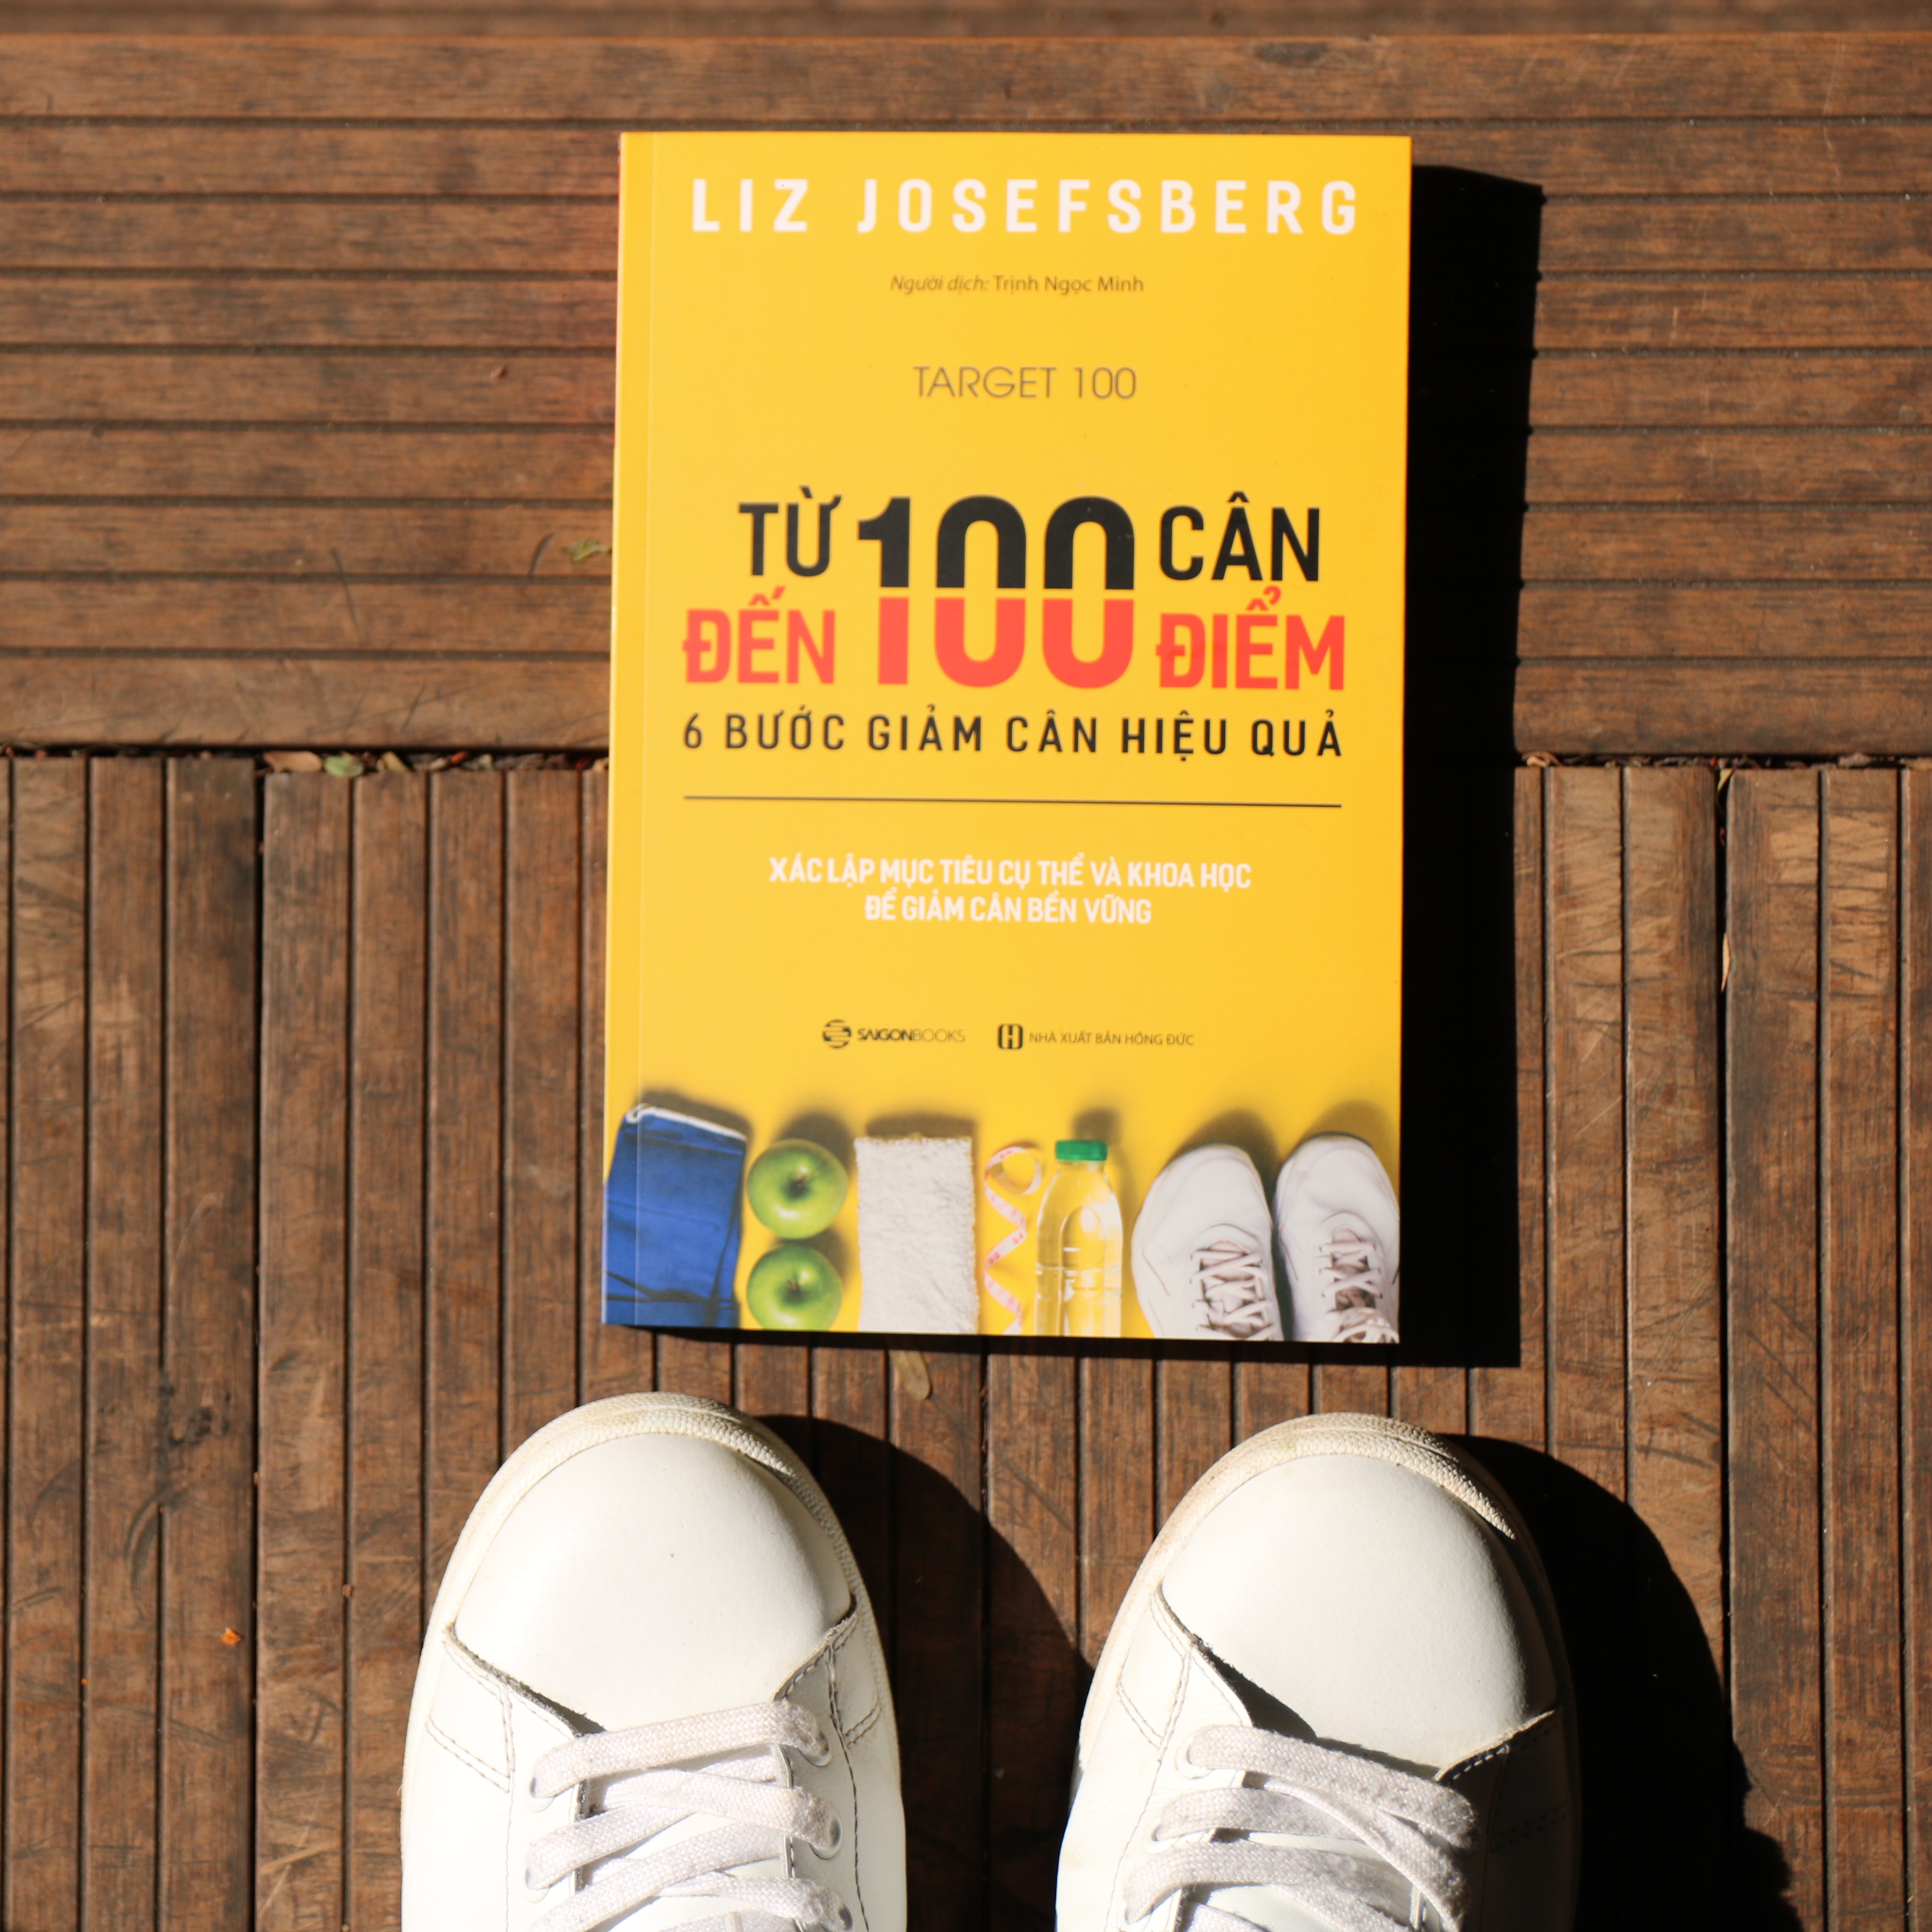 Combo 2 cuốn Sáng da - đẹp dáng: Bí quyết dưỡng da Hàn Quốc (Bìa mềm) + Từ 100 cân đến 100 điểm